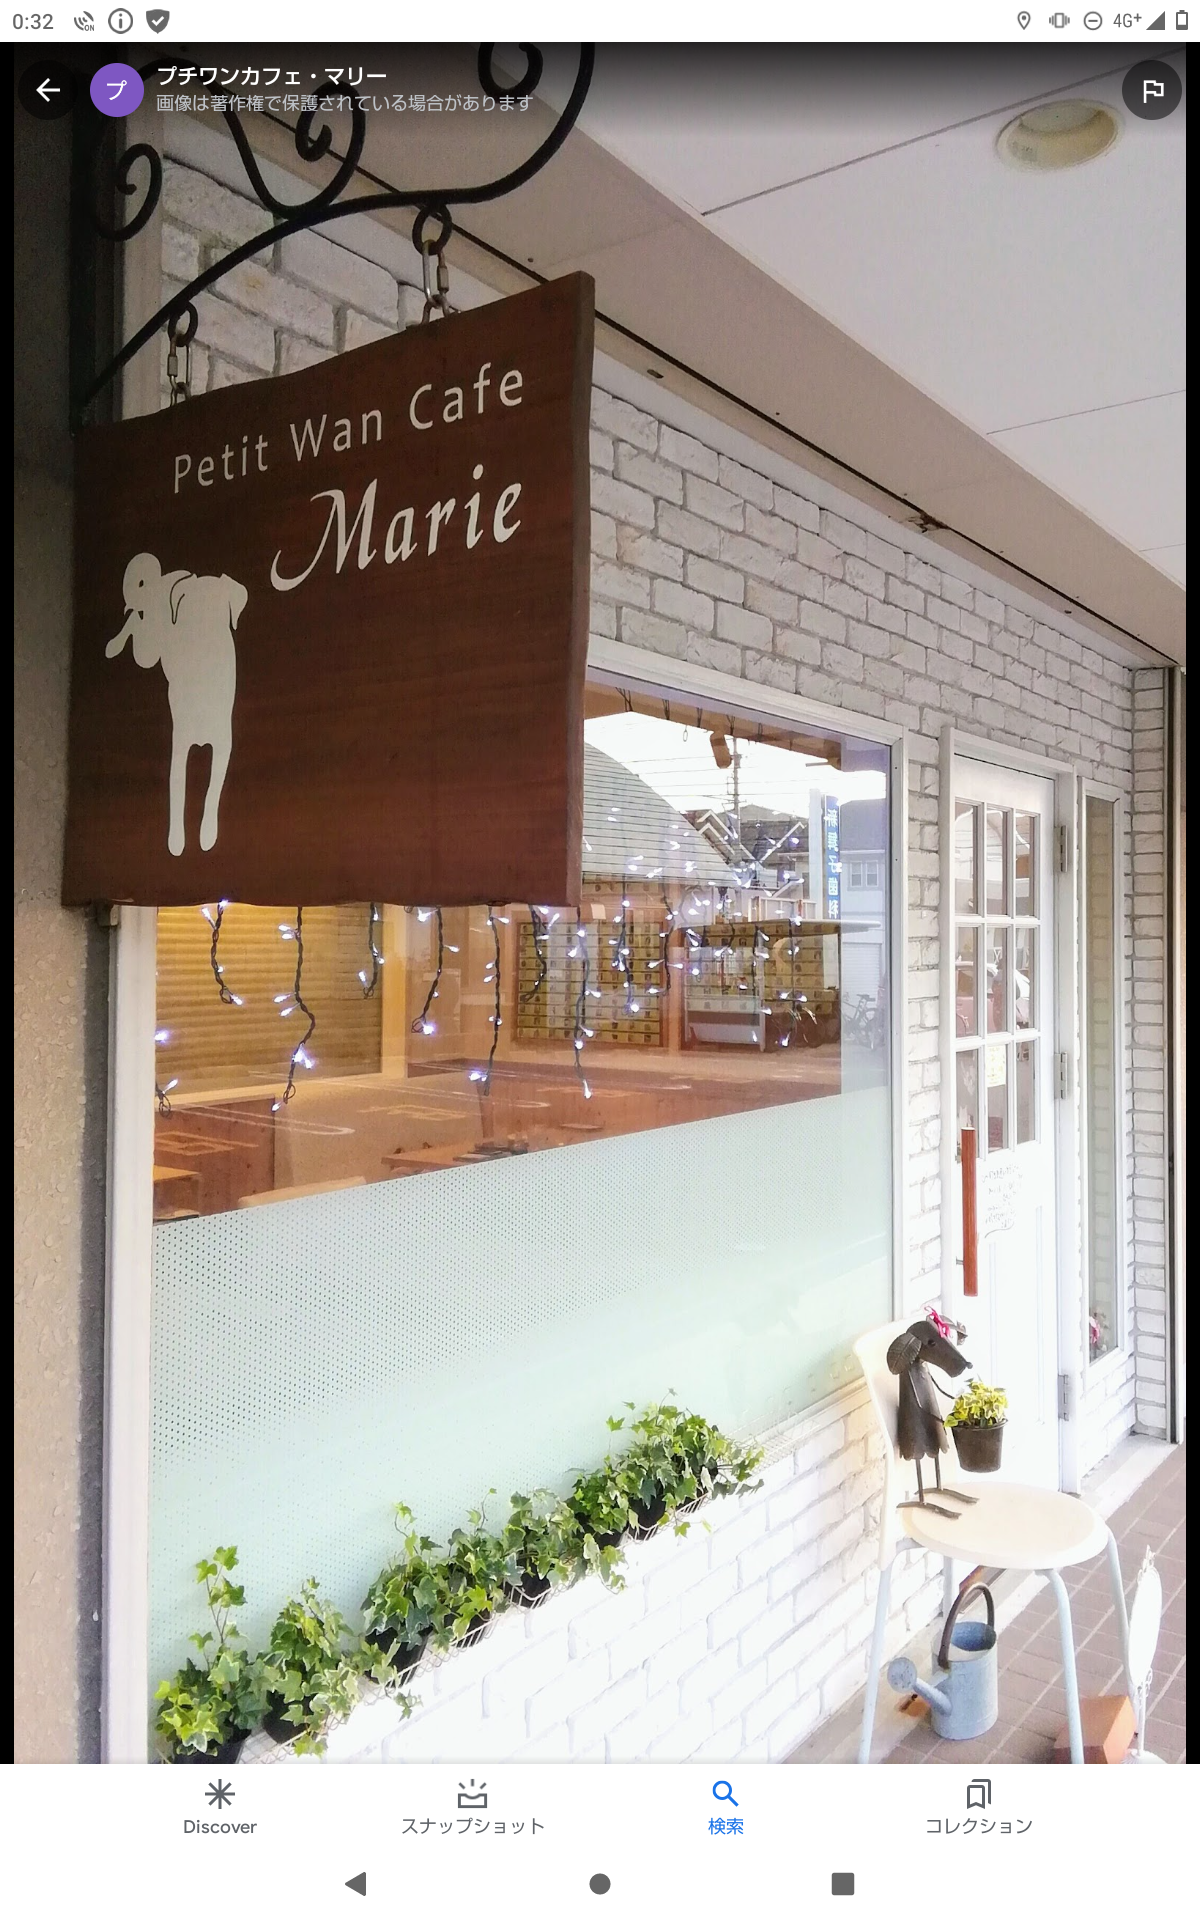 Petit Wan Cafe Marie